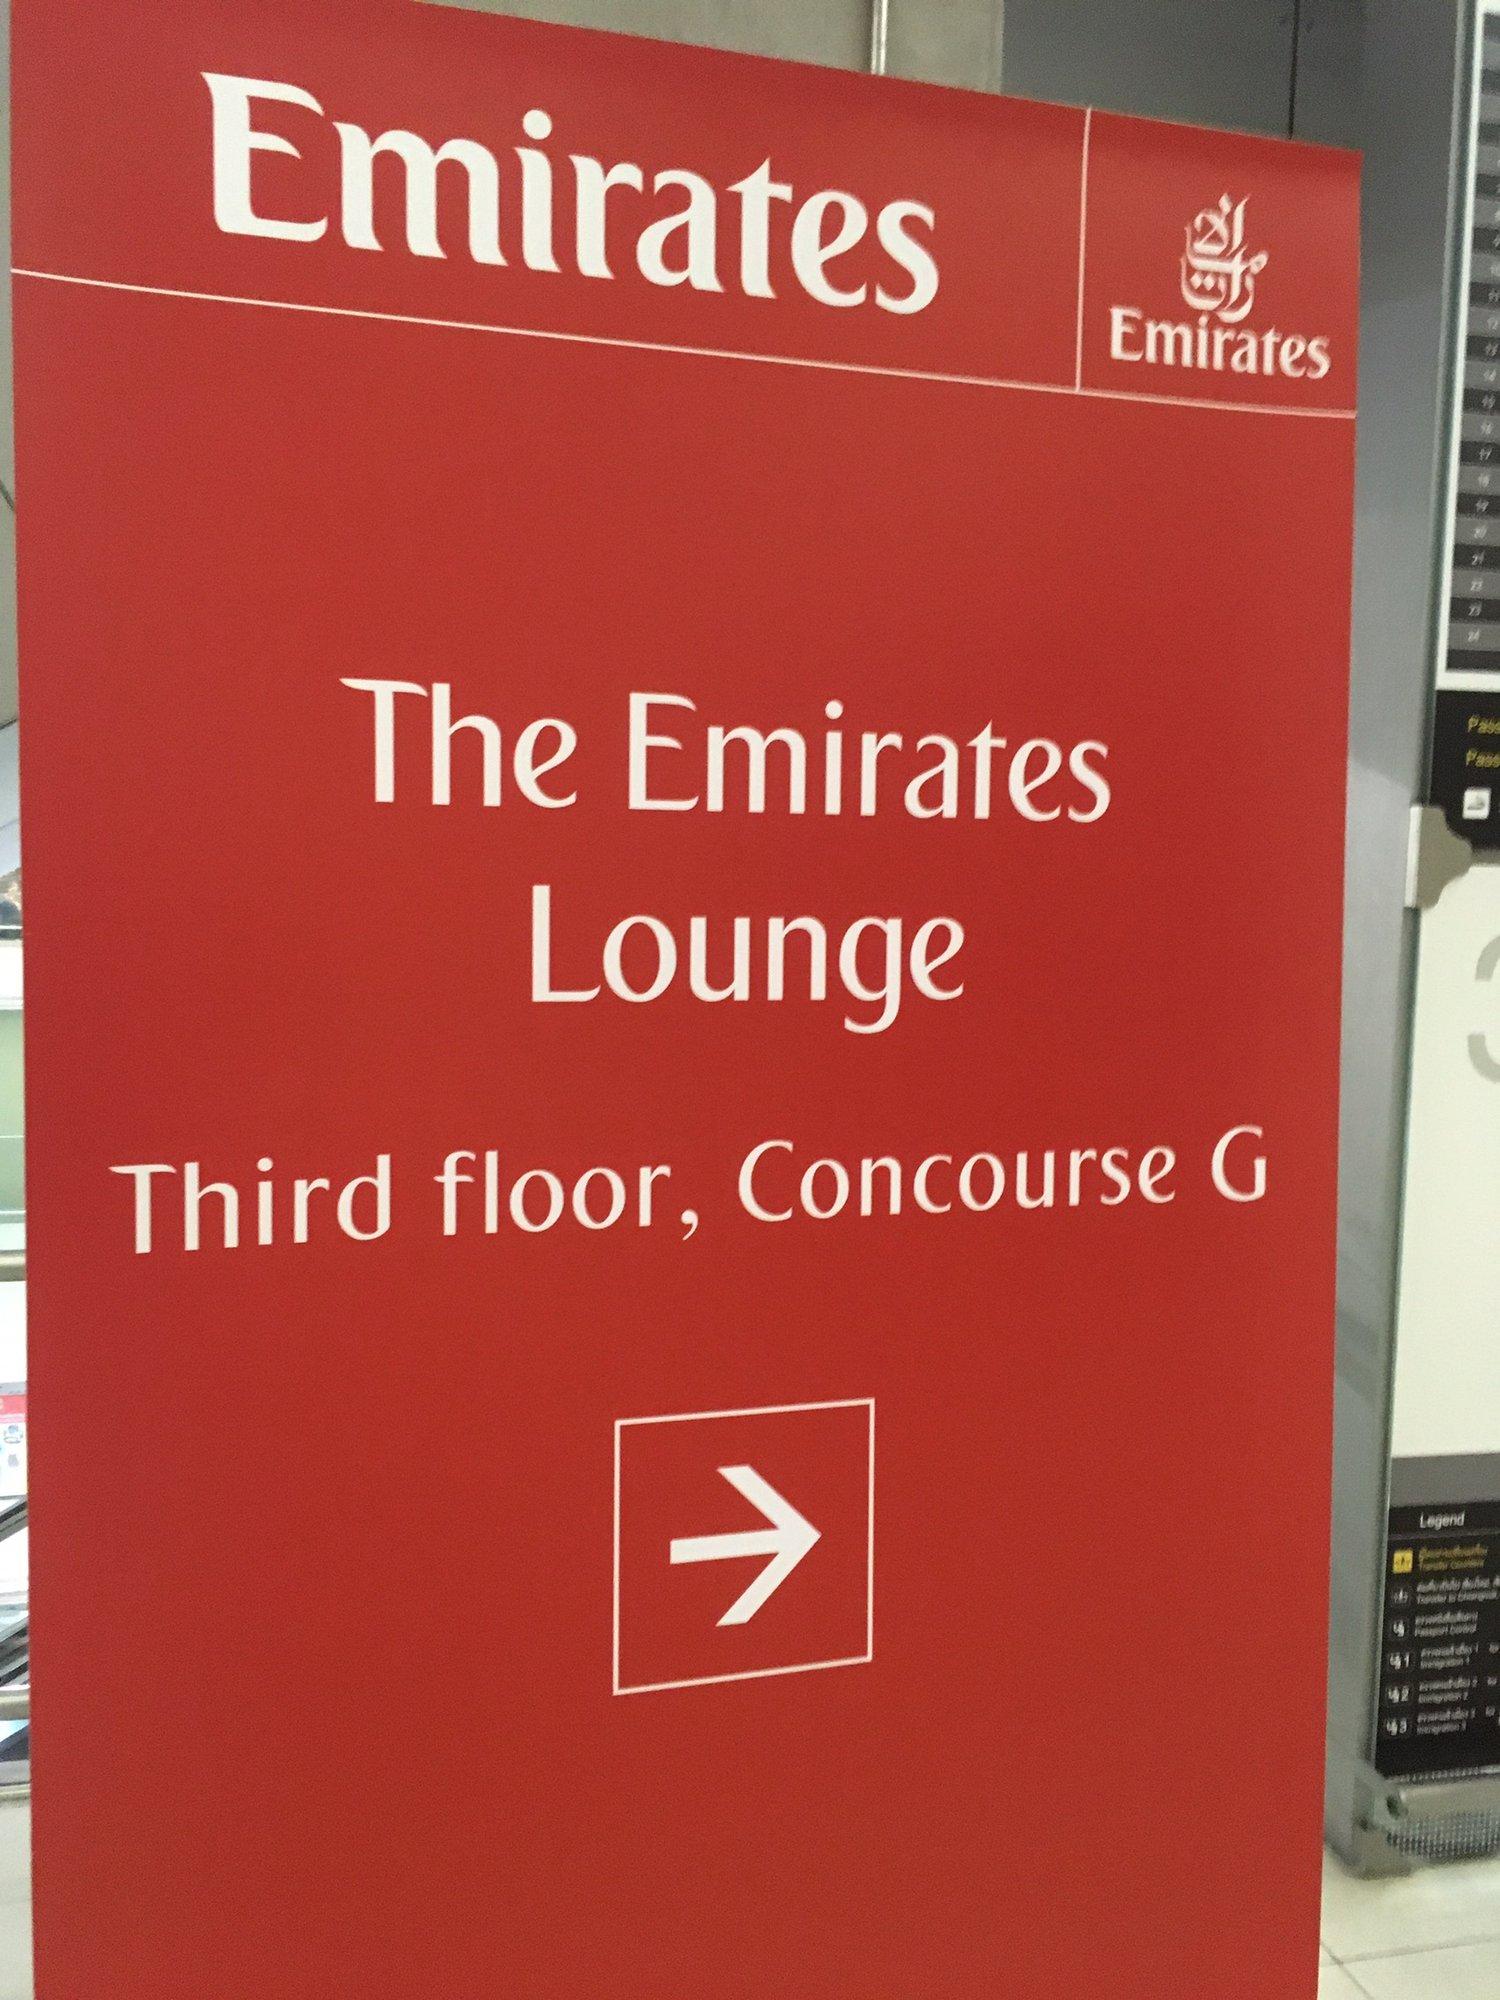 The Emirates Lounge image 9 of 15